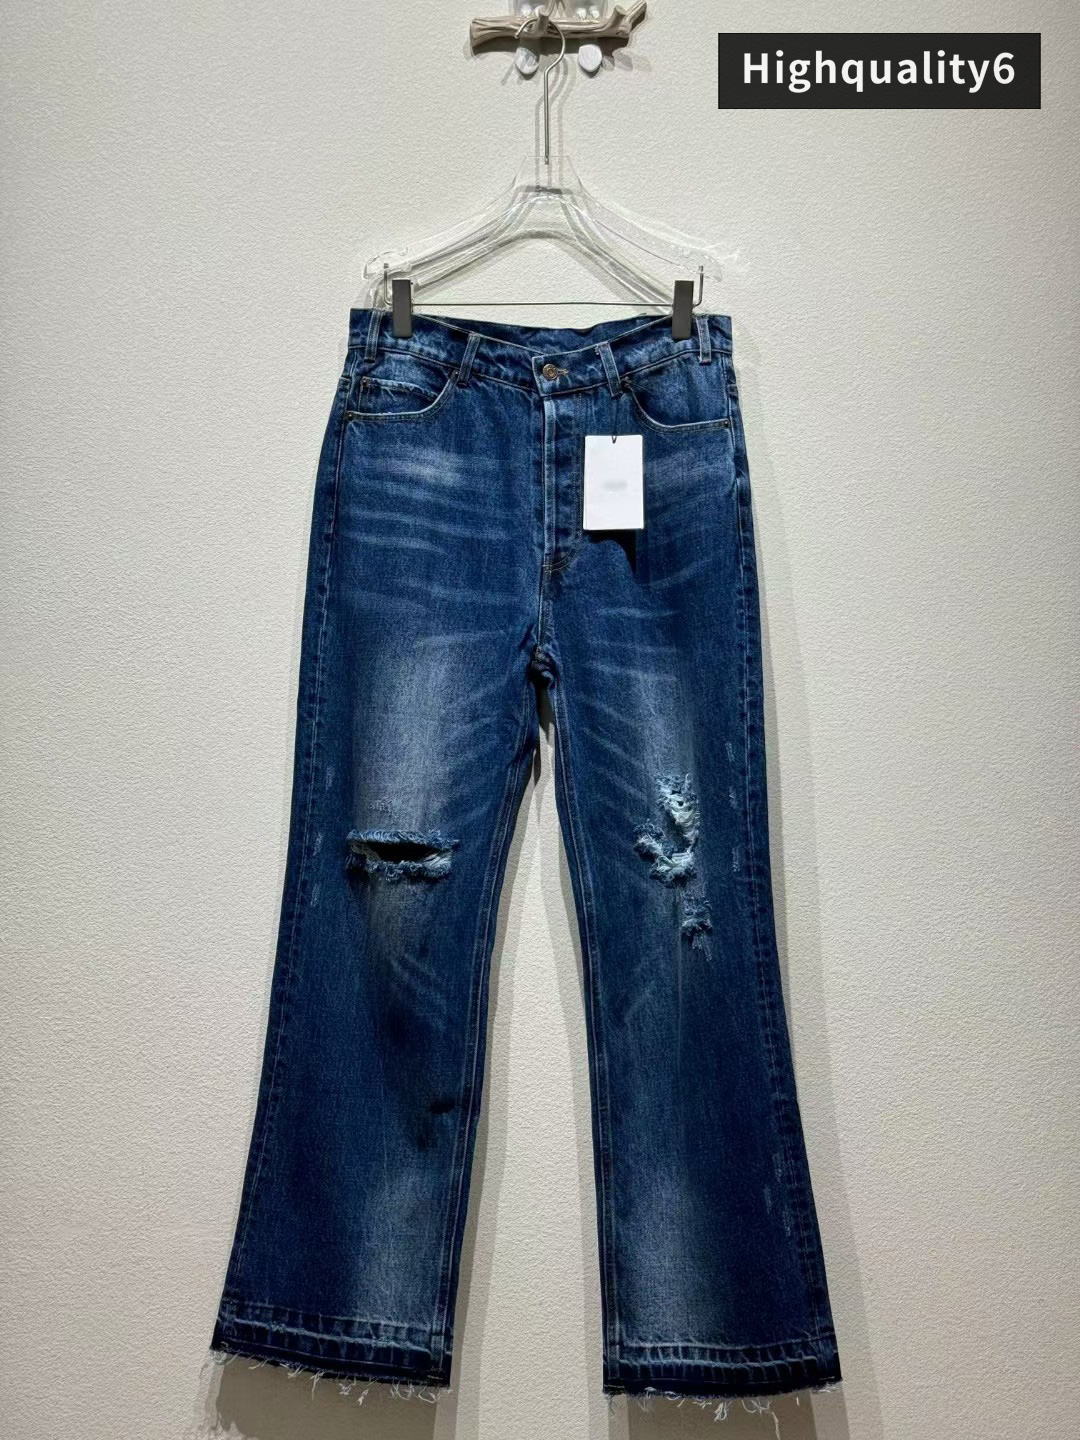 Jean de haute qualité de marque CE, jeans lavés en détresse classiques, jeans Triumphal Arch Cut Men's Slim Fit, pantalon long à la mode et polyvalent, livraison gratuite